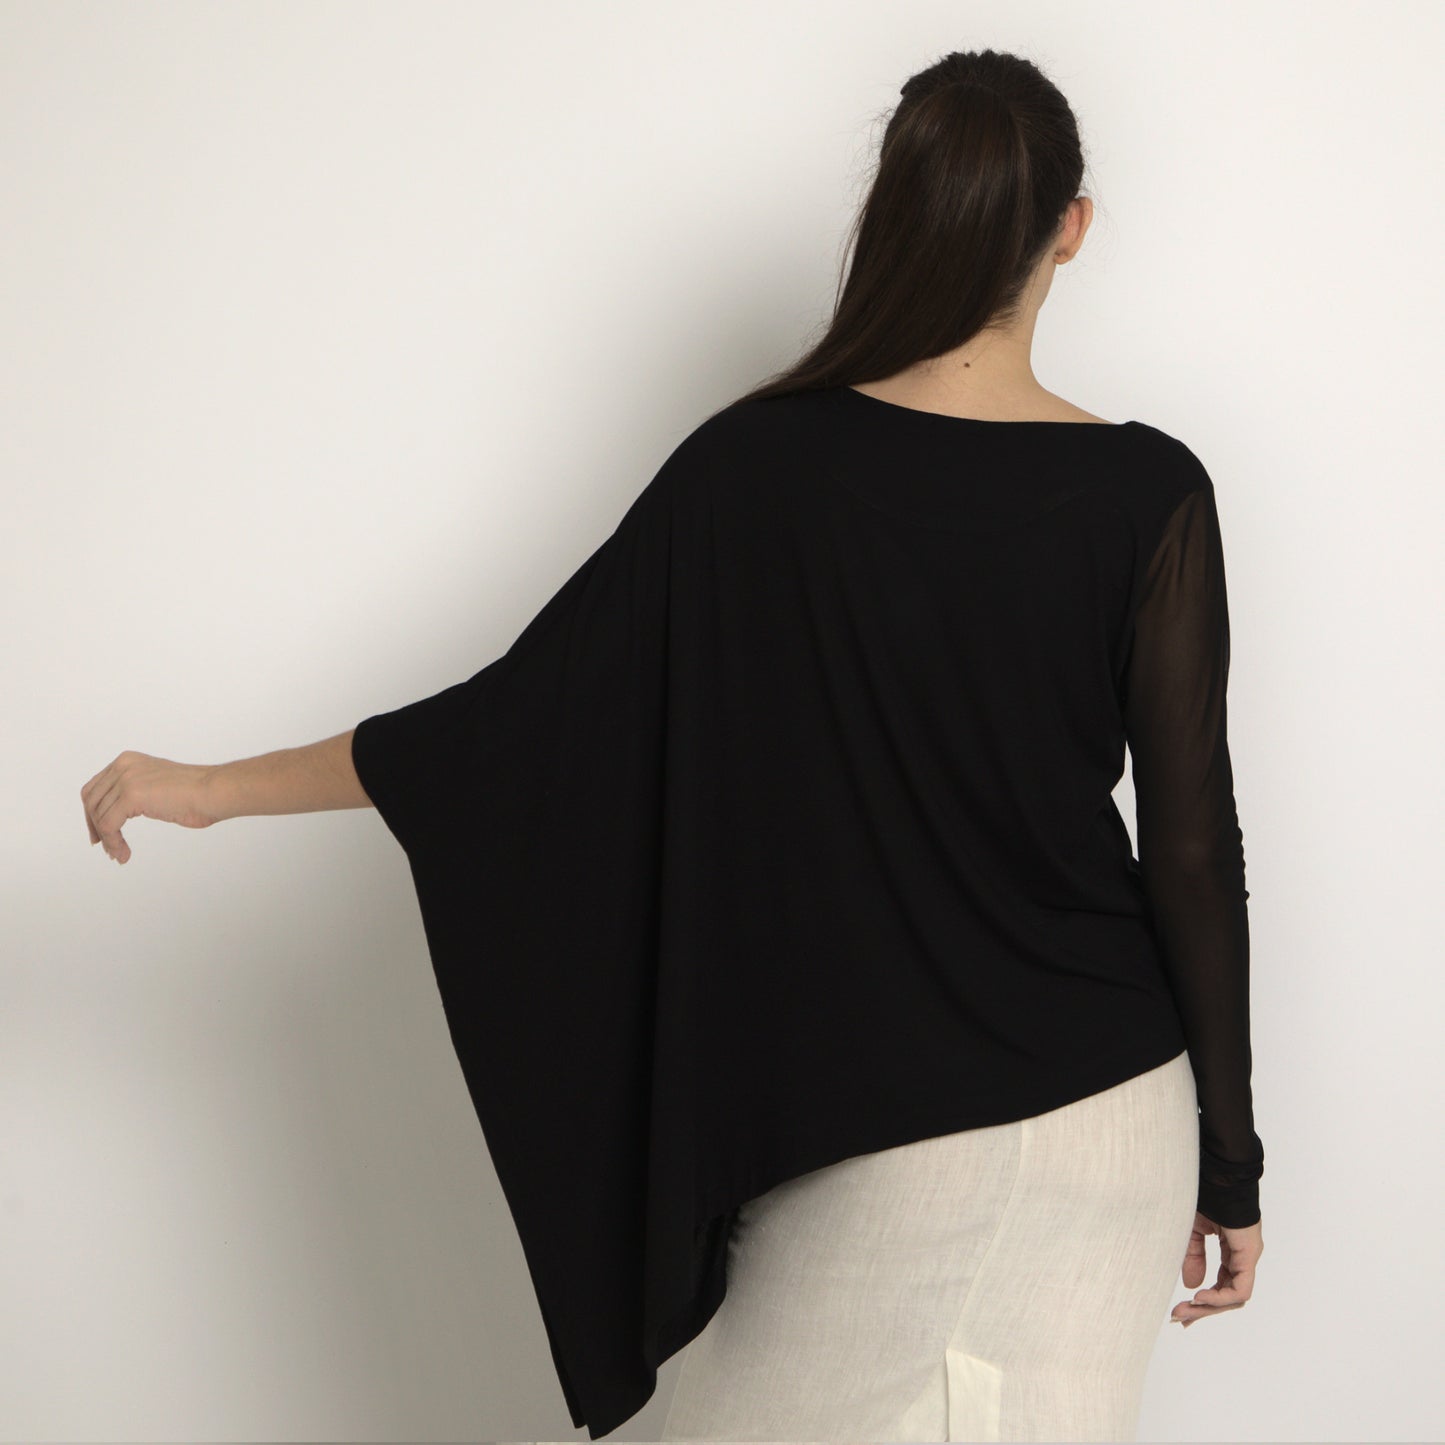 Chiara - Blusa assimétrica em malha com manga transparente em segunda pele (tule)